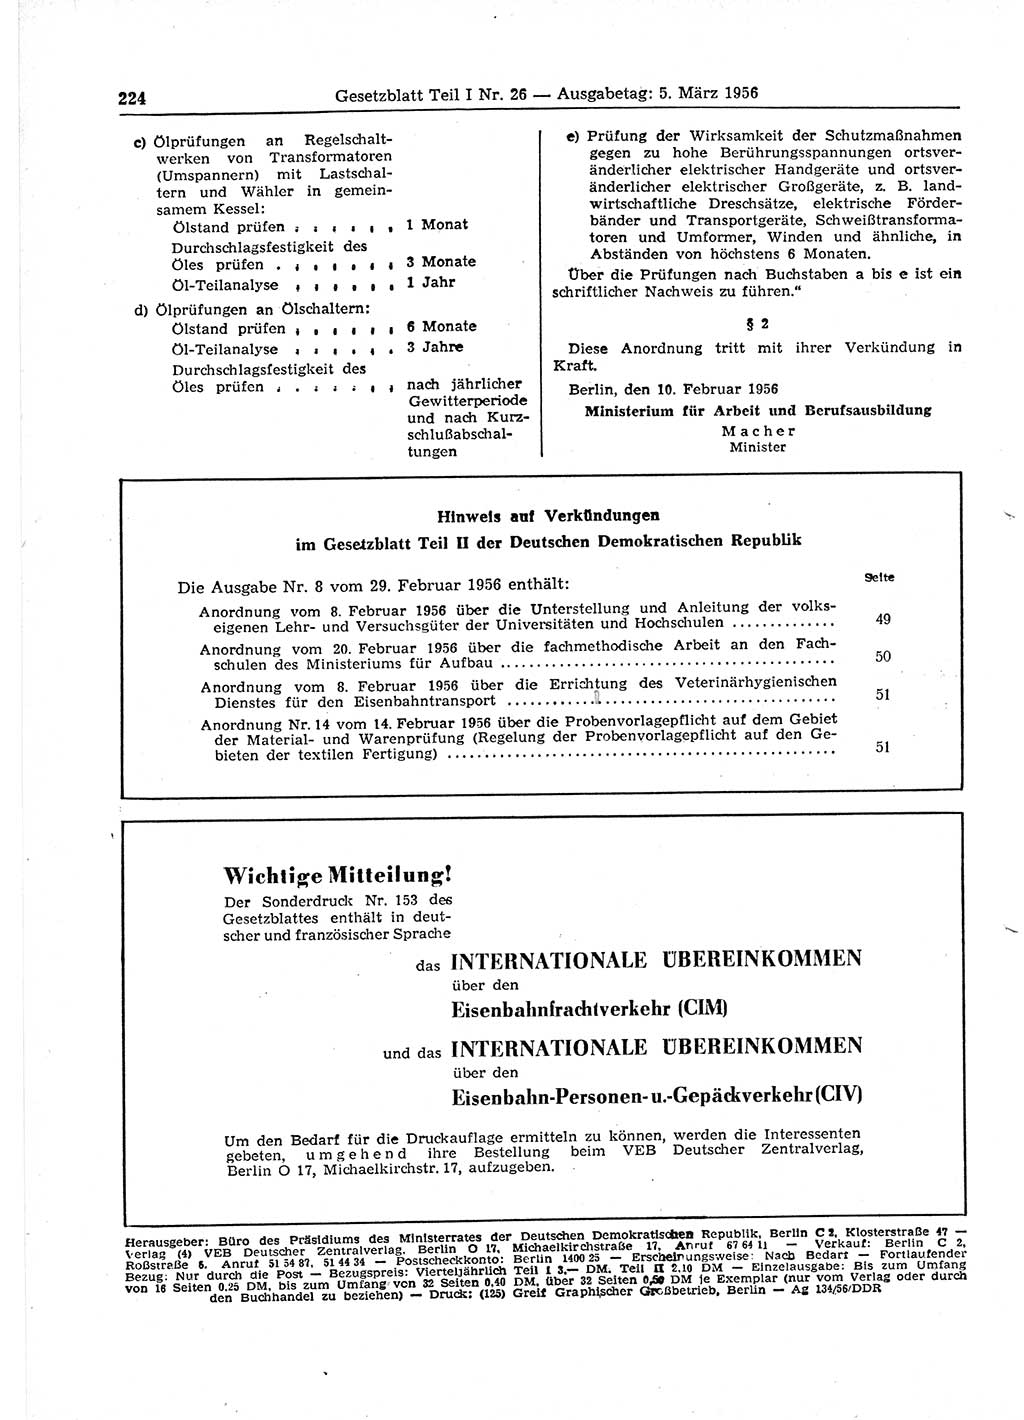 Gesetzblatt (GBl.) der Deutschen Demokratischen Republik (DDR) Teil Ⅰ 1956, Seite 224 (GBl. DDR Ⅰ 1956, S. 224)